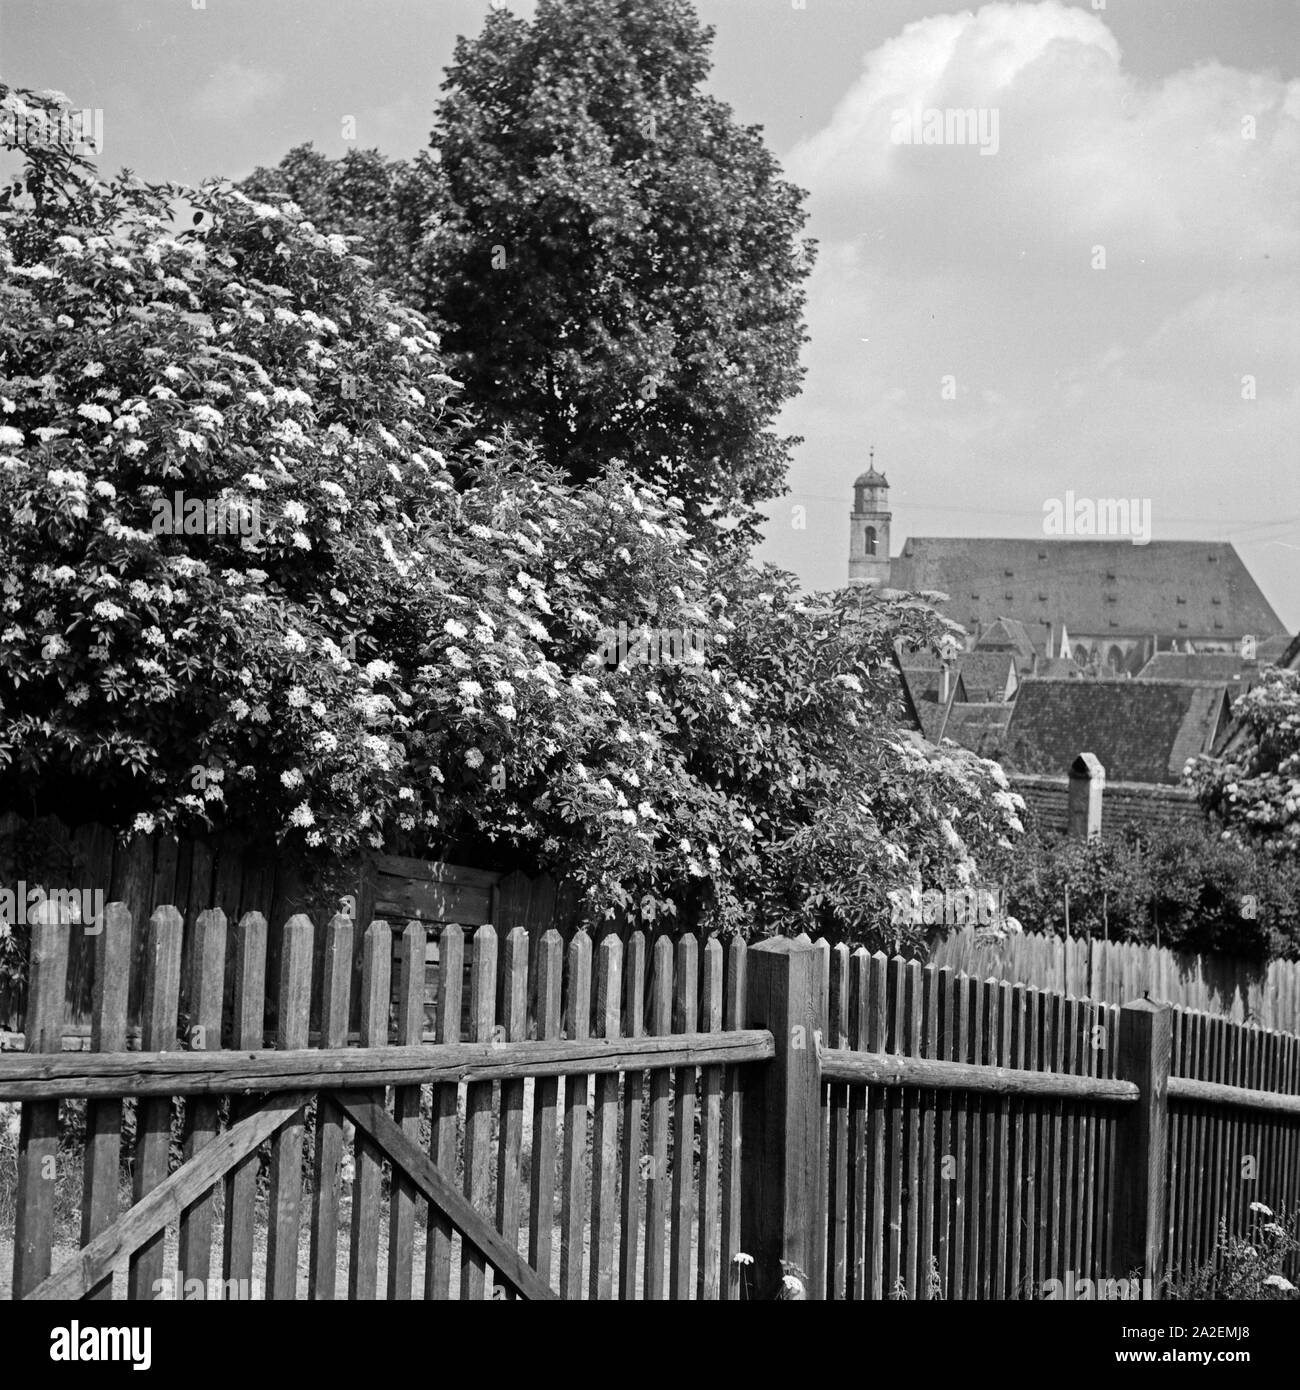 Blick über einen Zaun zur katholischen Stadtpfarrkirche St. Georg in Dinkelsbühl, Deutschland 1930er Jahre. Blick auf die Kirche Die Römisch-katholische St. George's in Dinkelsbühl, Deutschland 1930. Stockfoto